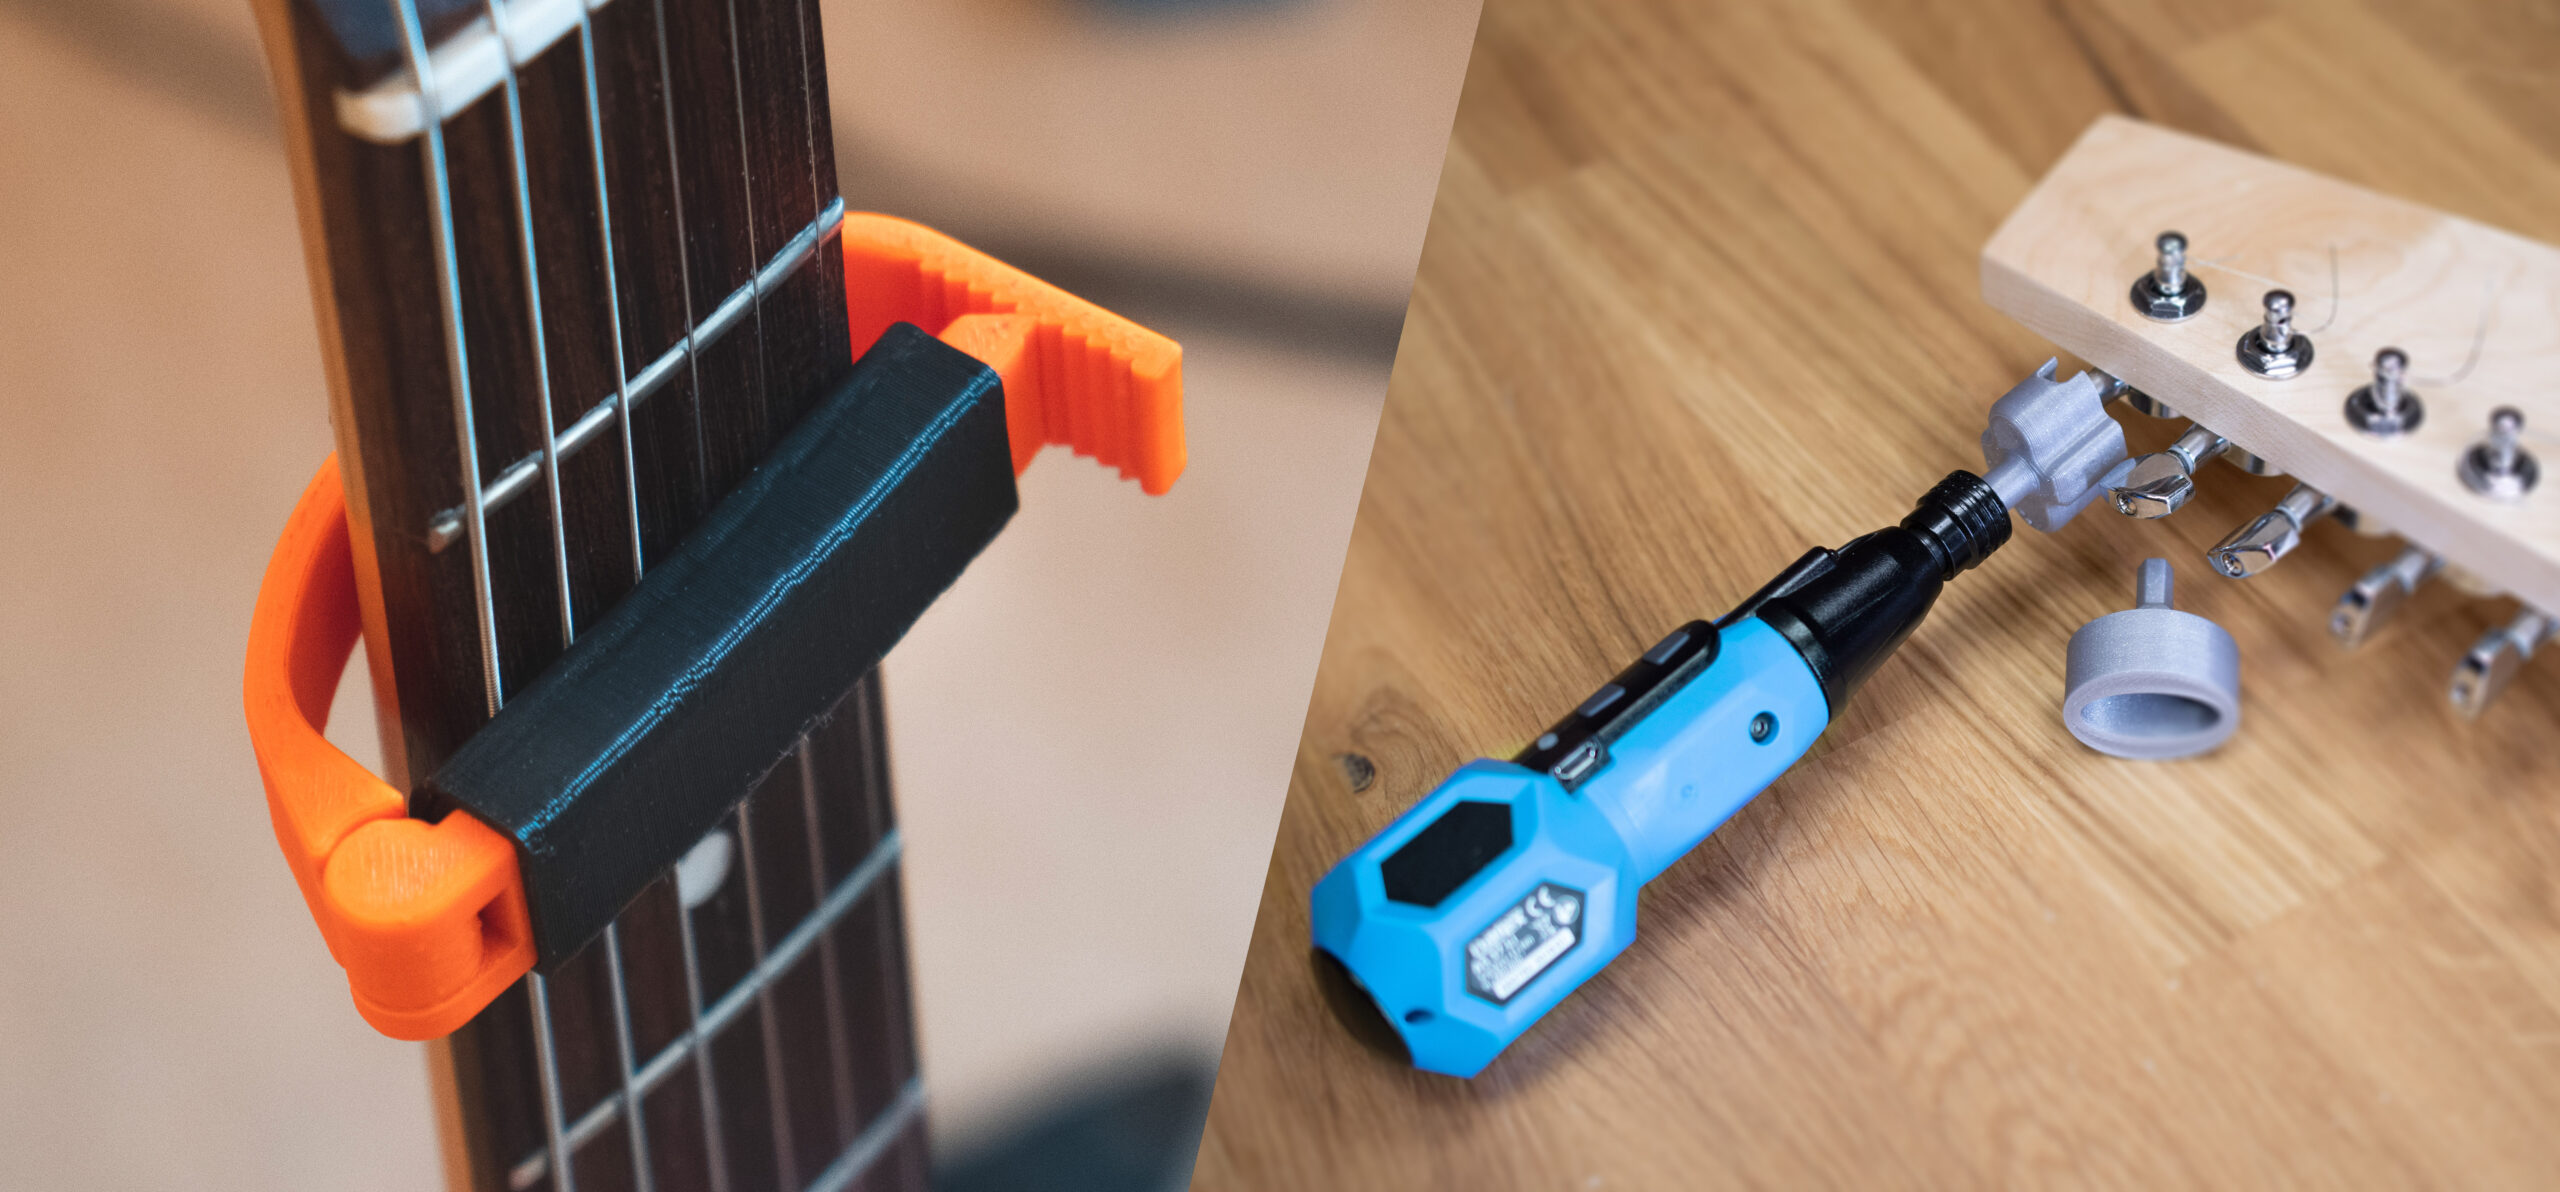 Accessoires de guitare imprimés en 3D - Original Prusa 3D Printers